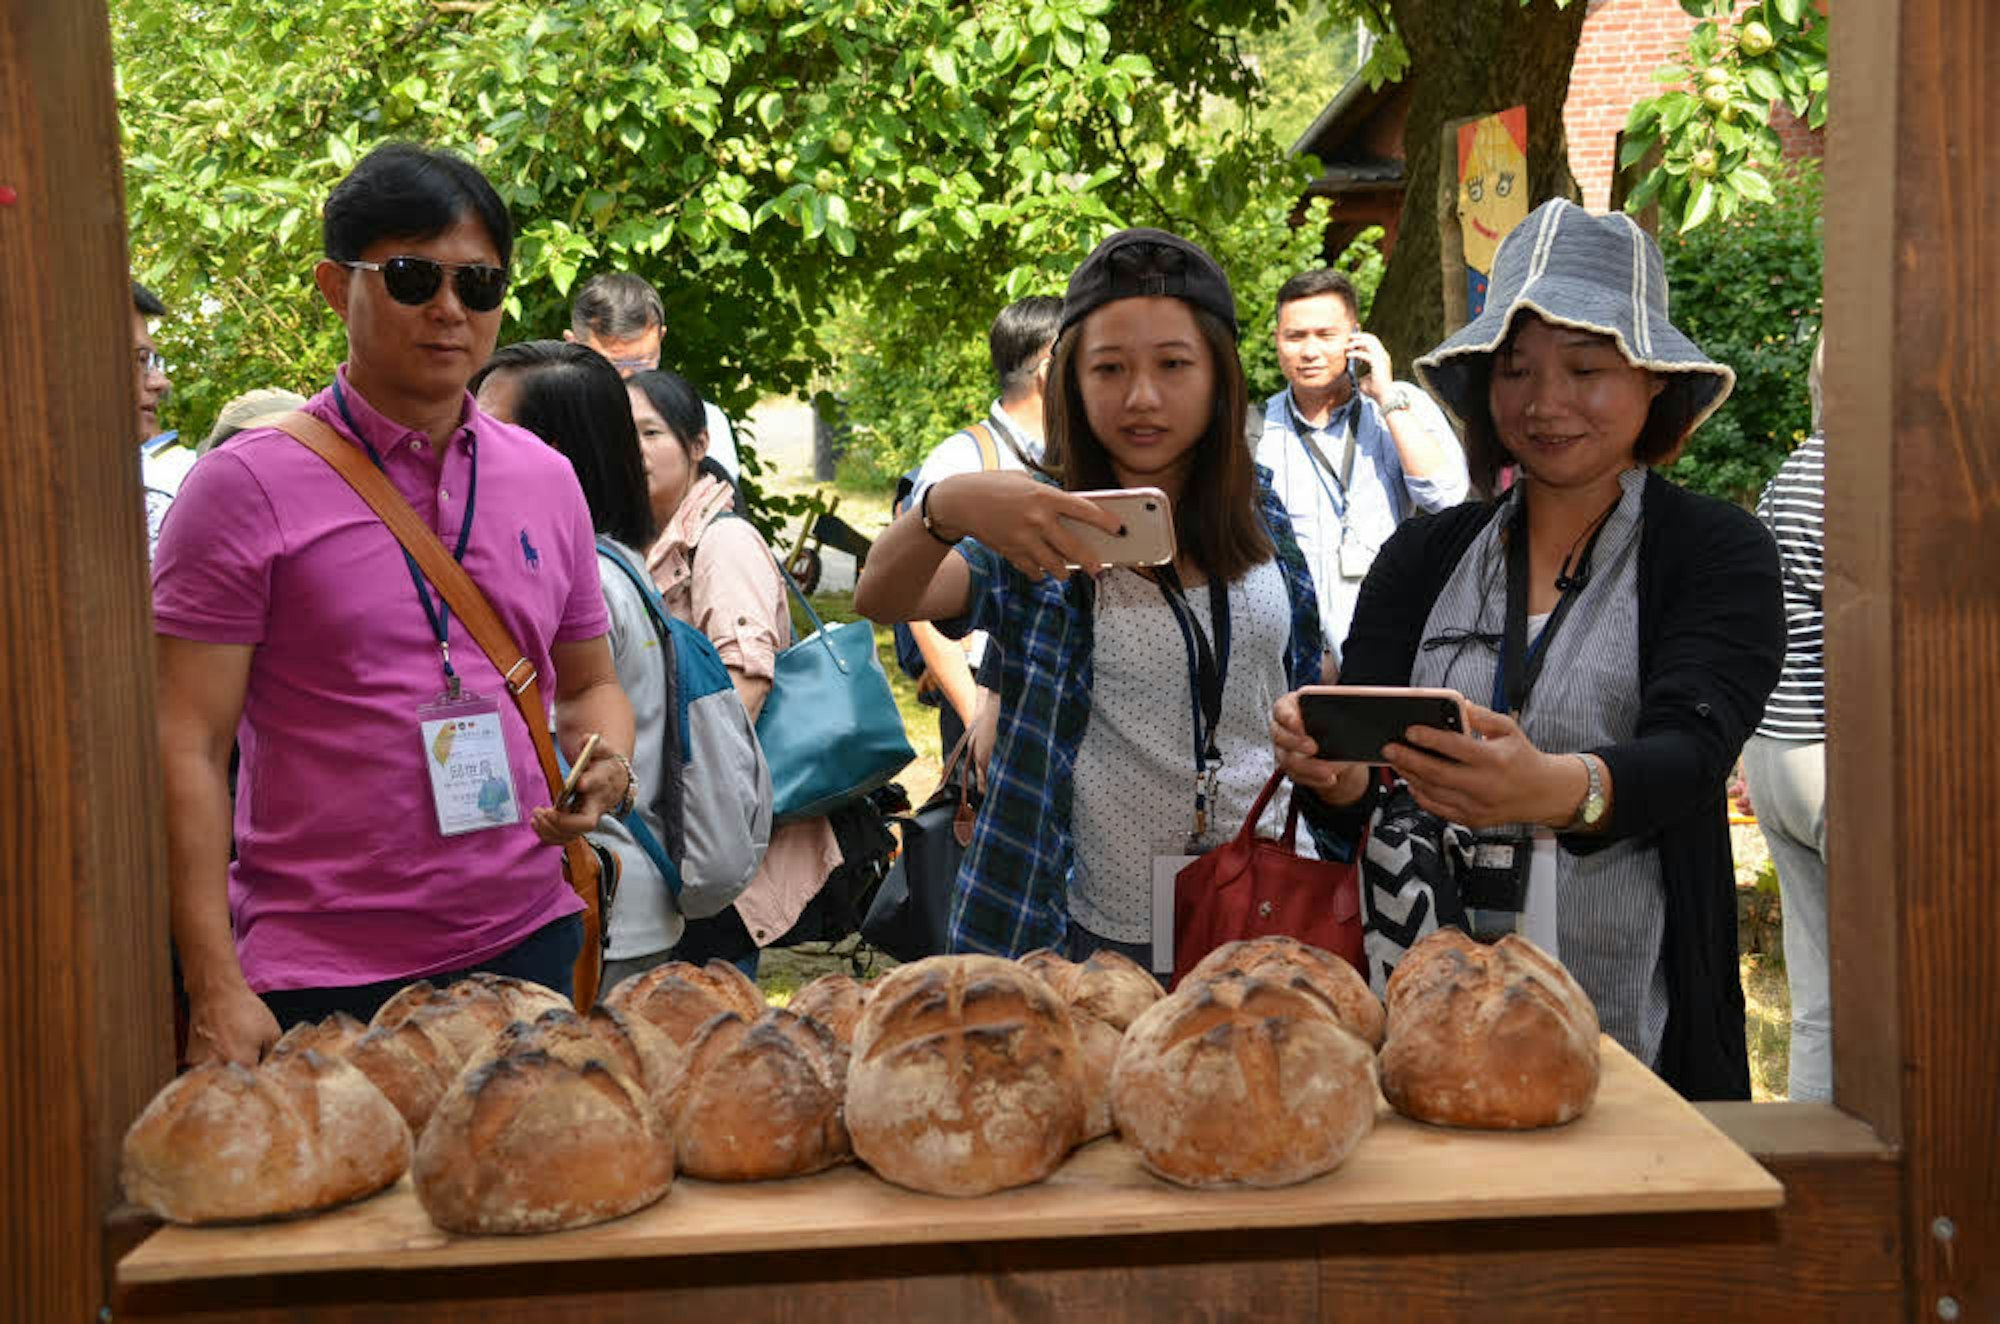 Brot aus dem Benrother Backes war gestern eines der beliebtesten Motive, als 42 Gäste aus Taiwan um Vize-Minister Juey-Chih Lee (u.l.) durch den Ort spazierten. Die Tour führten Werner Demmer von der Dorfgemeinschaft und Übersetzerin Chunyi Chen (u.r.).